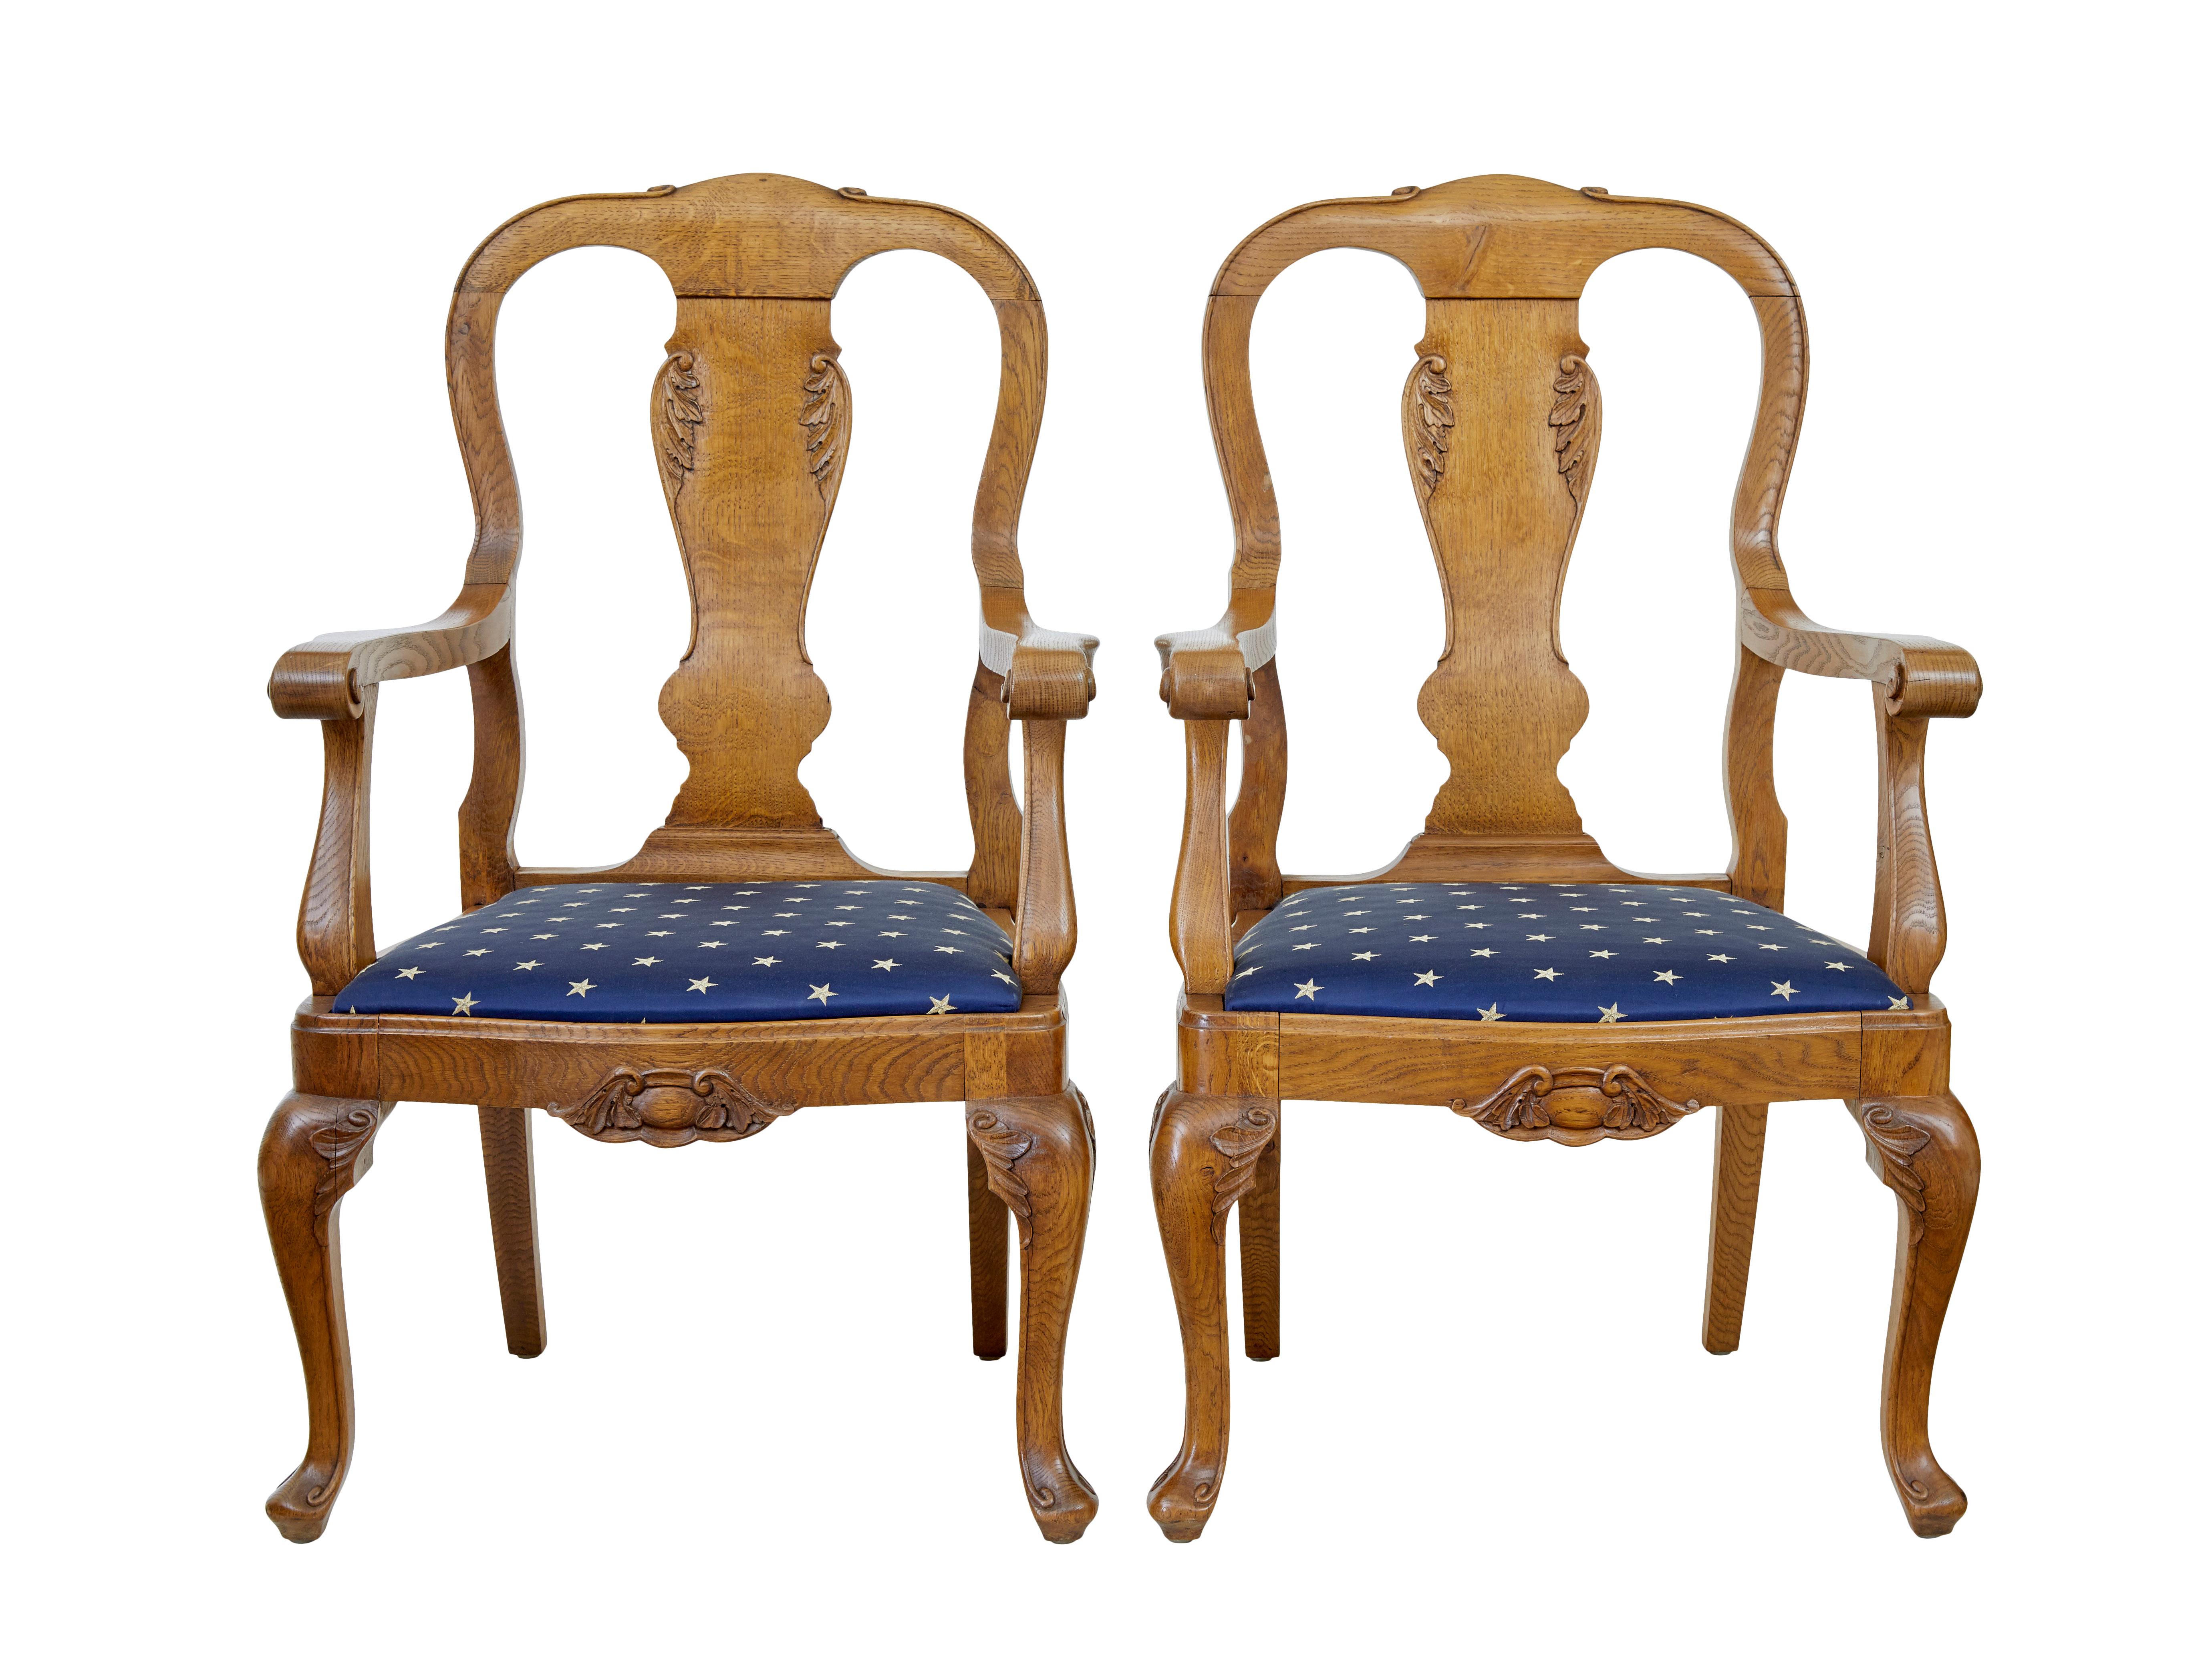 Paire de fauteuils en chêne sculpté du 19ème siècle vers 1890.

Paire de chaises de bonne qualité dans le goût de Chippendale.  Dossier de forme typique avec détails sculptés.  Les accoudoirs et les supports sont chantournés et la traverse avant est